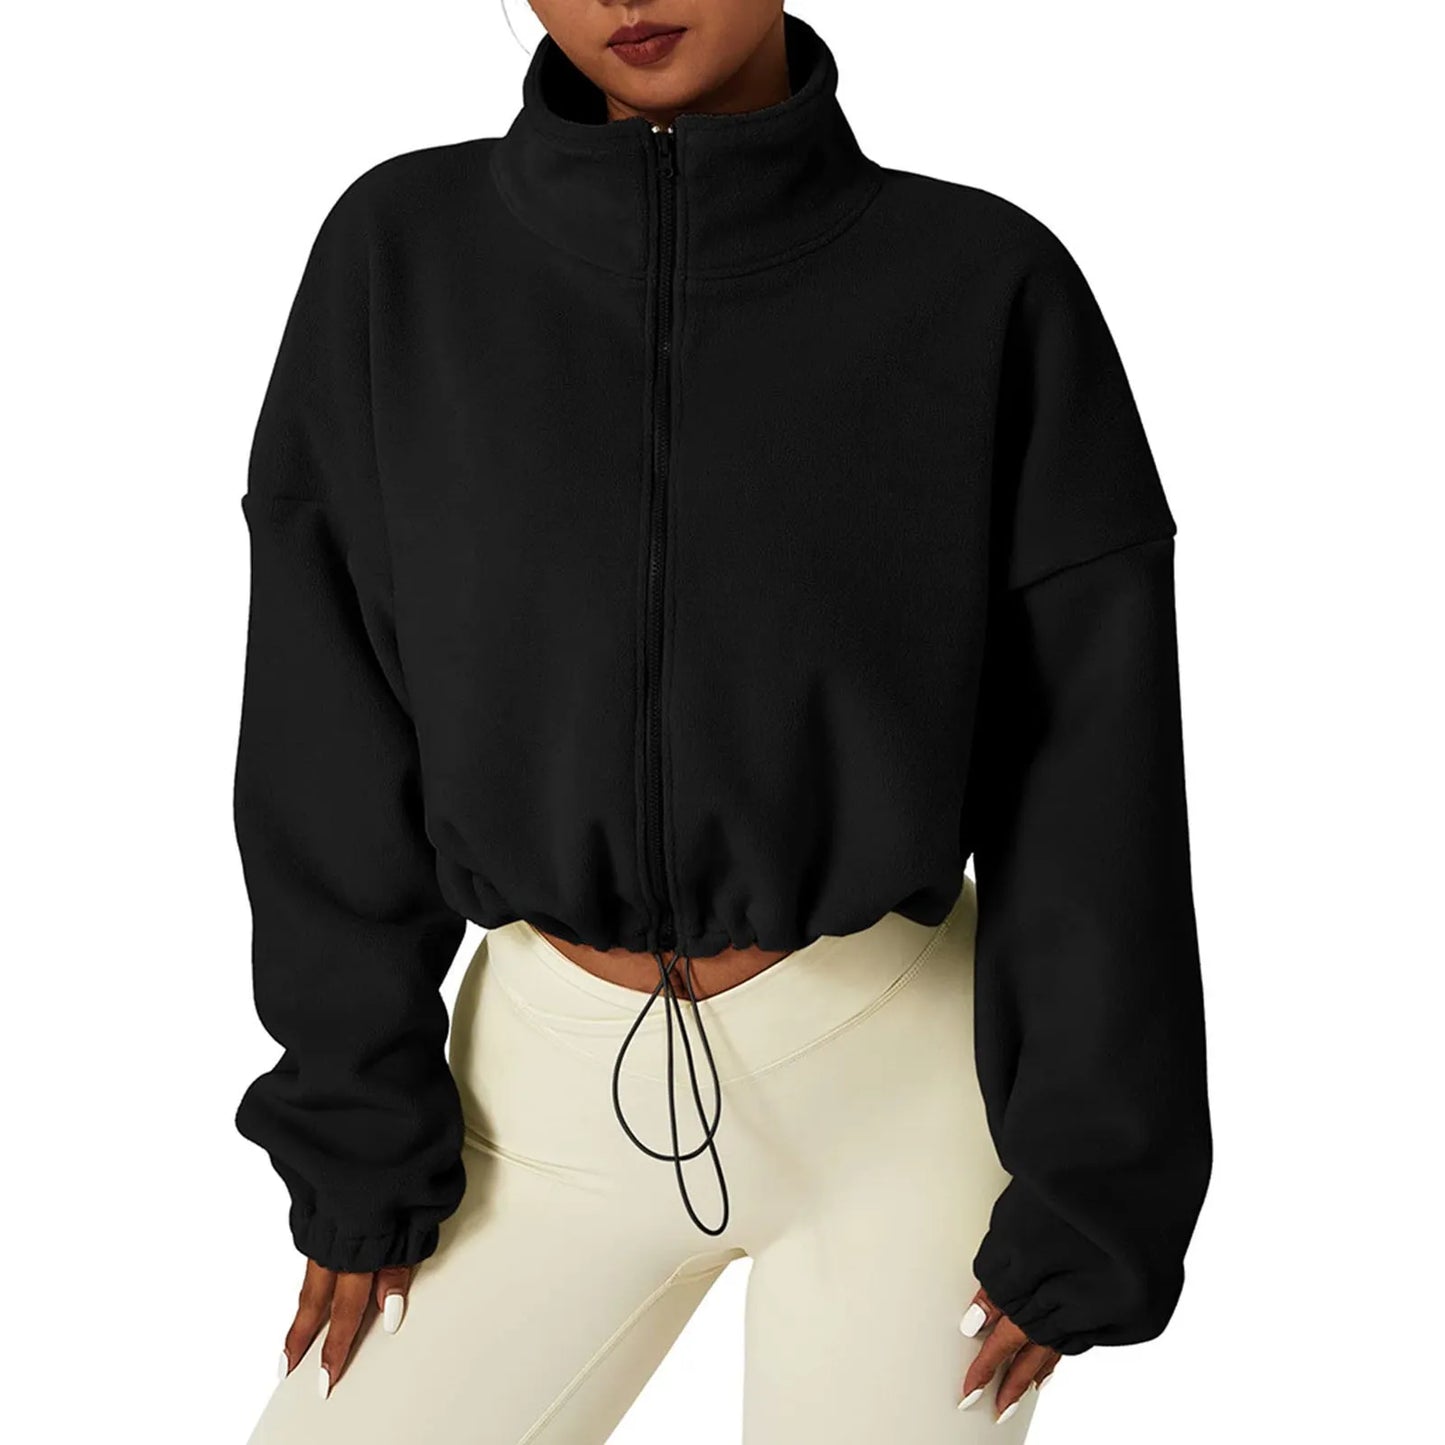 Women Zipper Hoodless Sweatshirt Fall Winter Warm Long Sleeve Loose Short Hoodies Sweatshirt Female